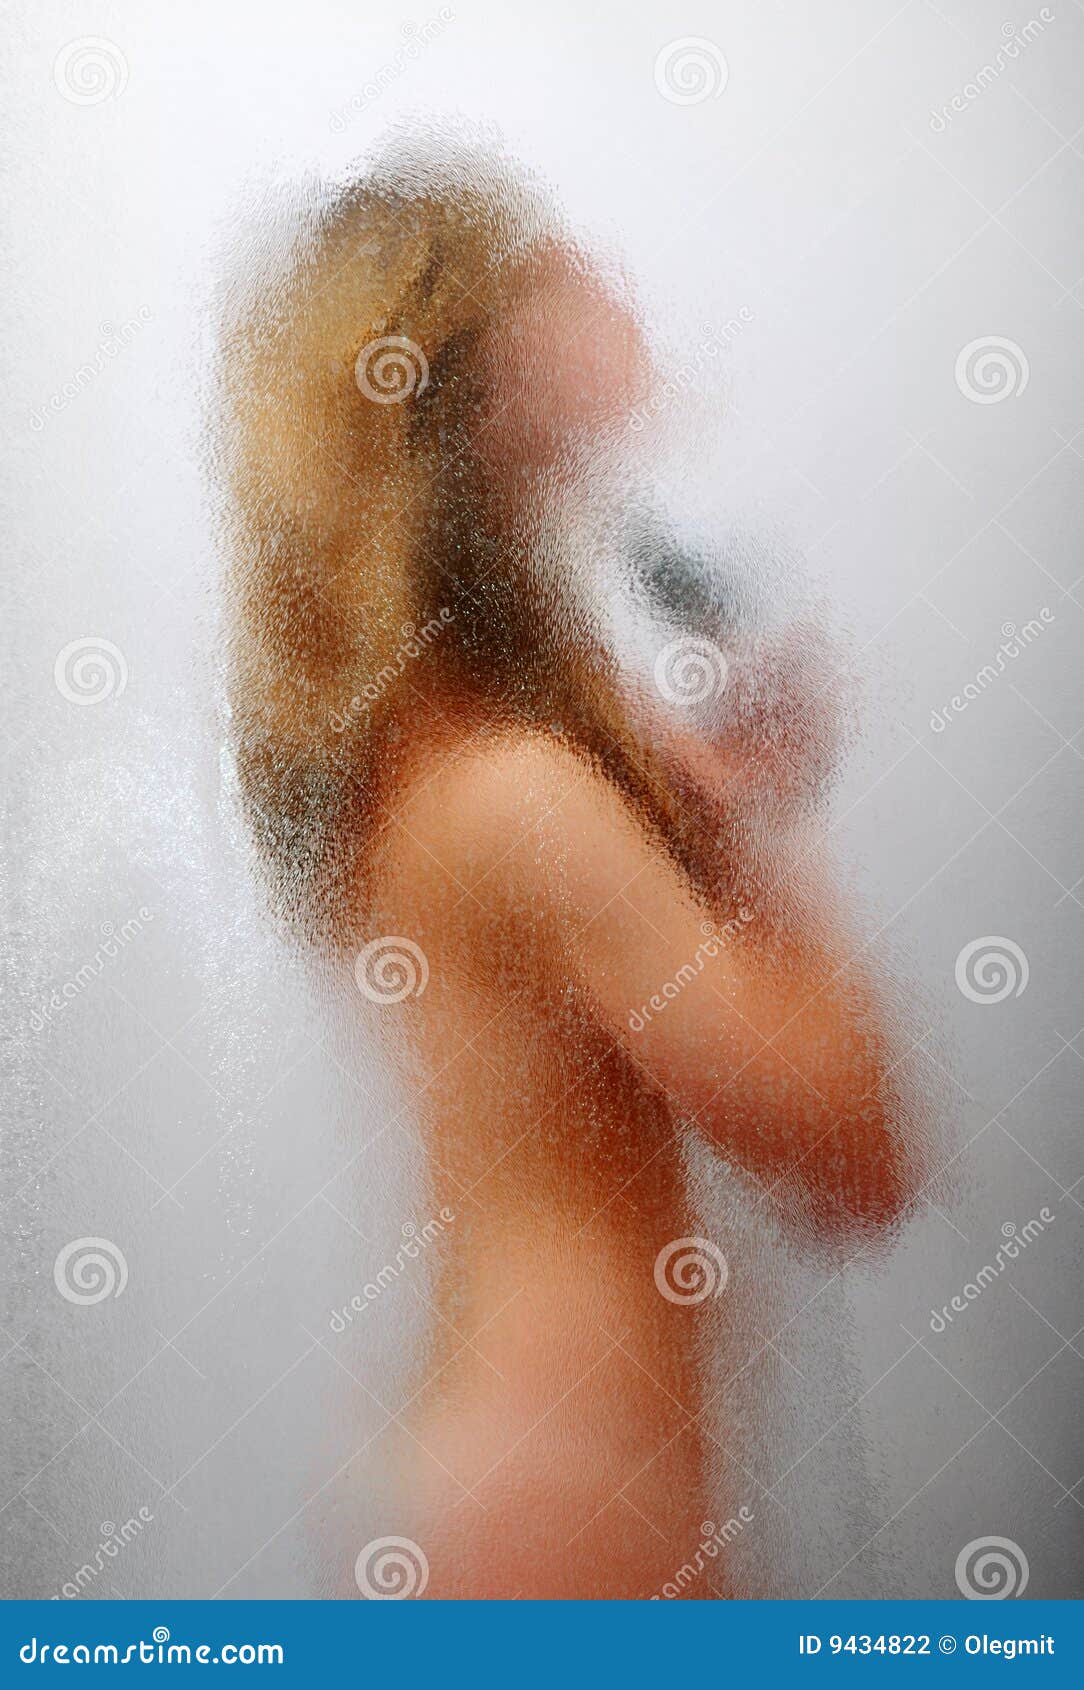 Women Having A Shower 35